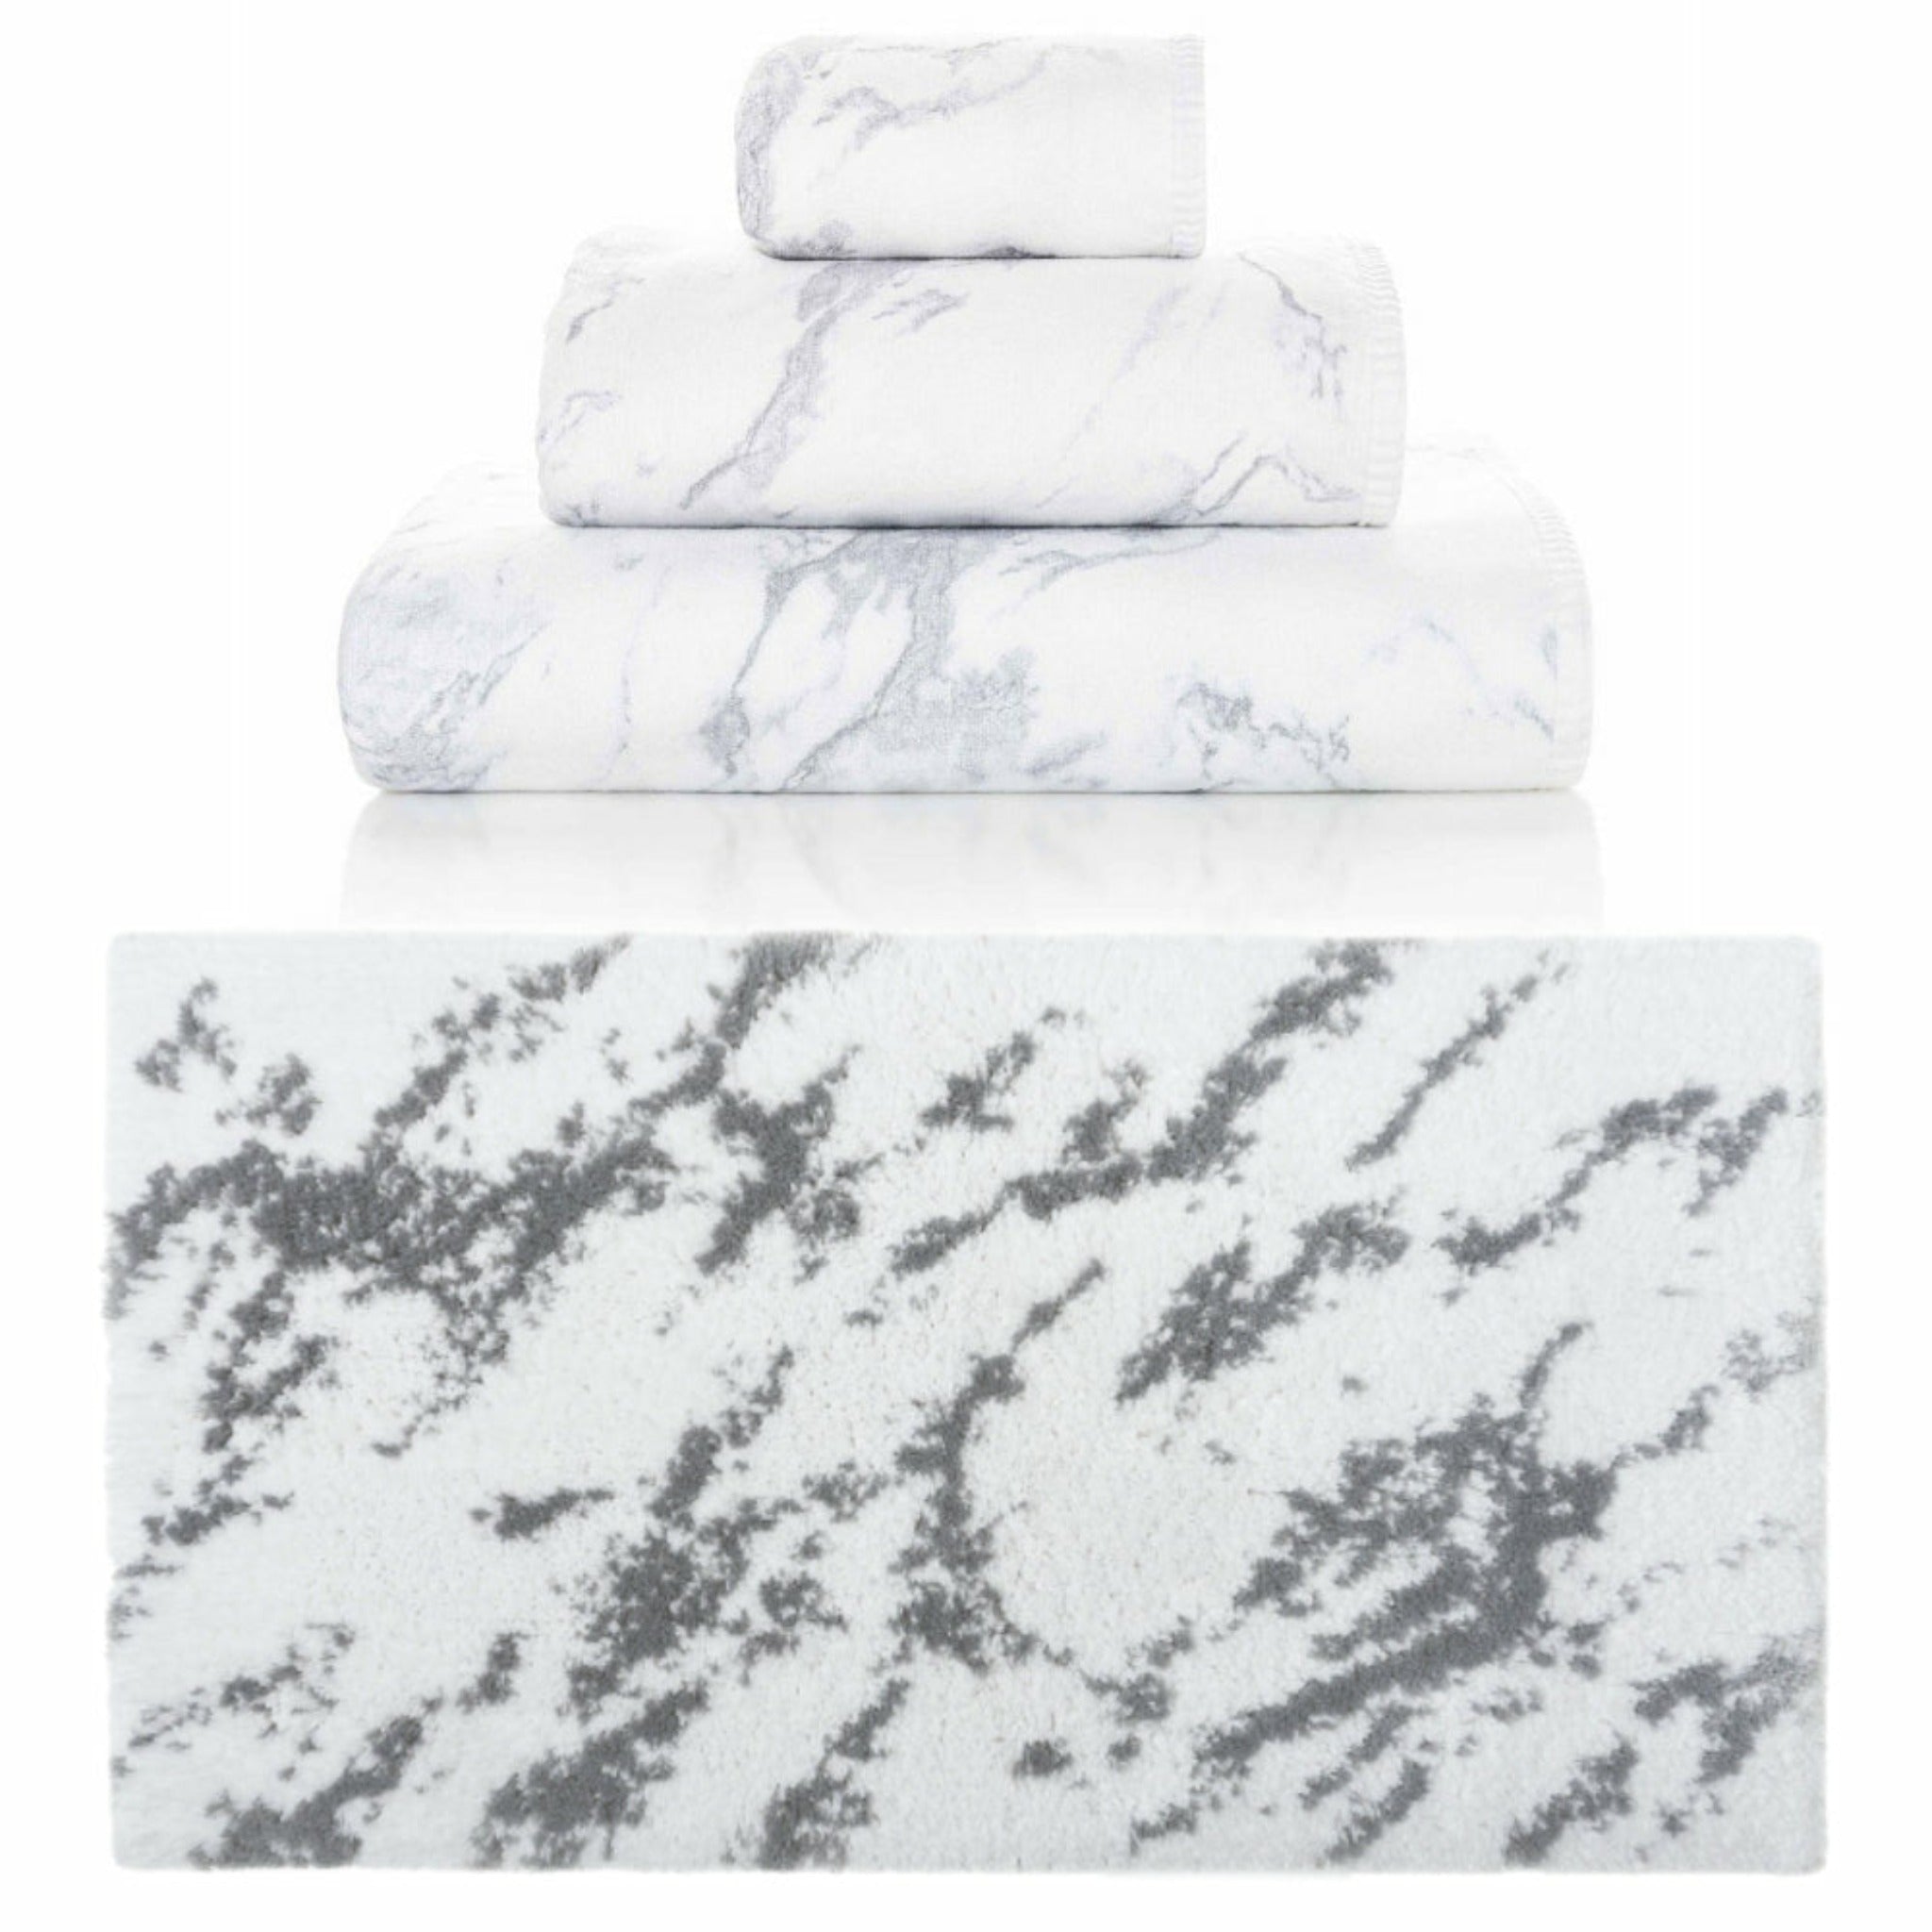 Graccioza Venice Bath Towels and Rugs (Multi/Grey)